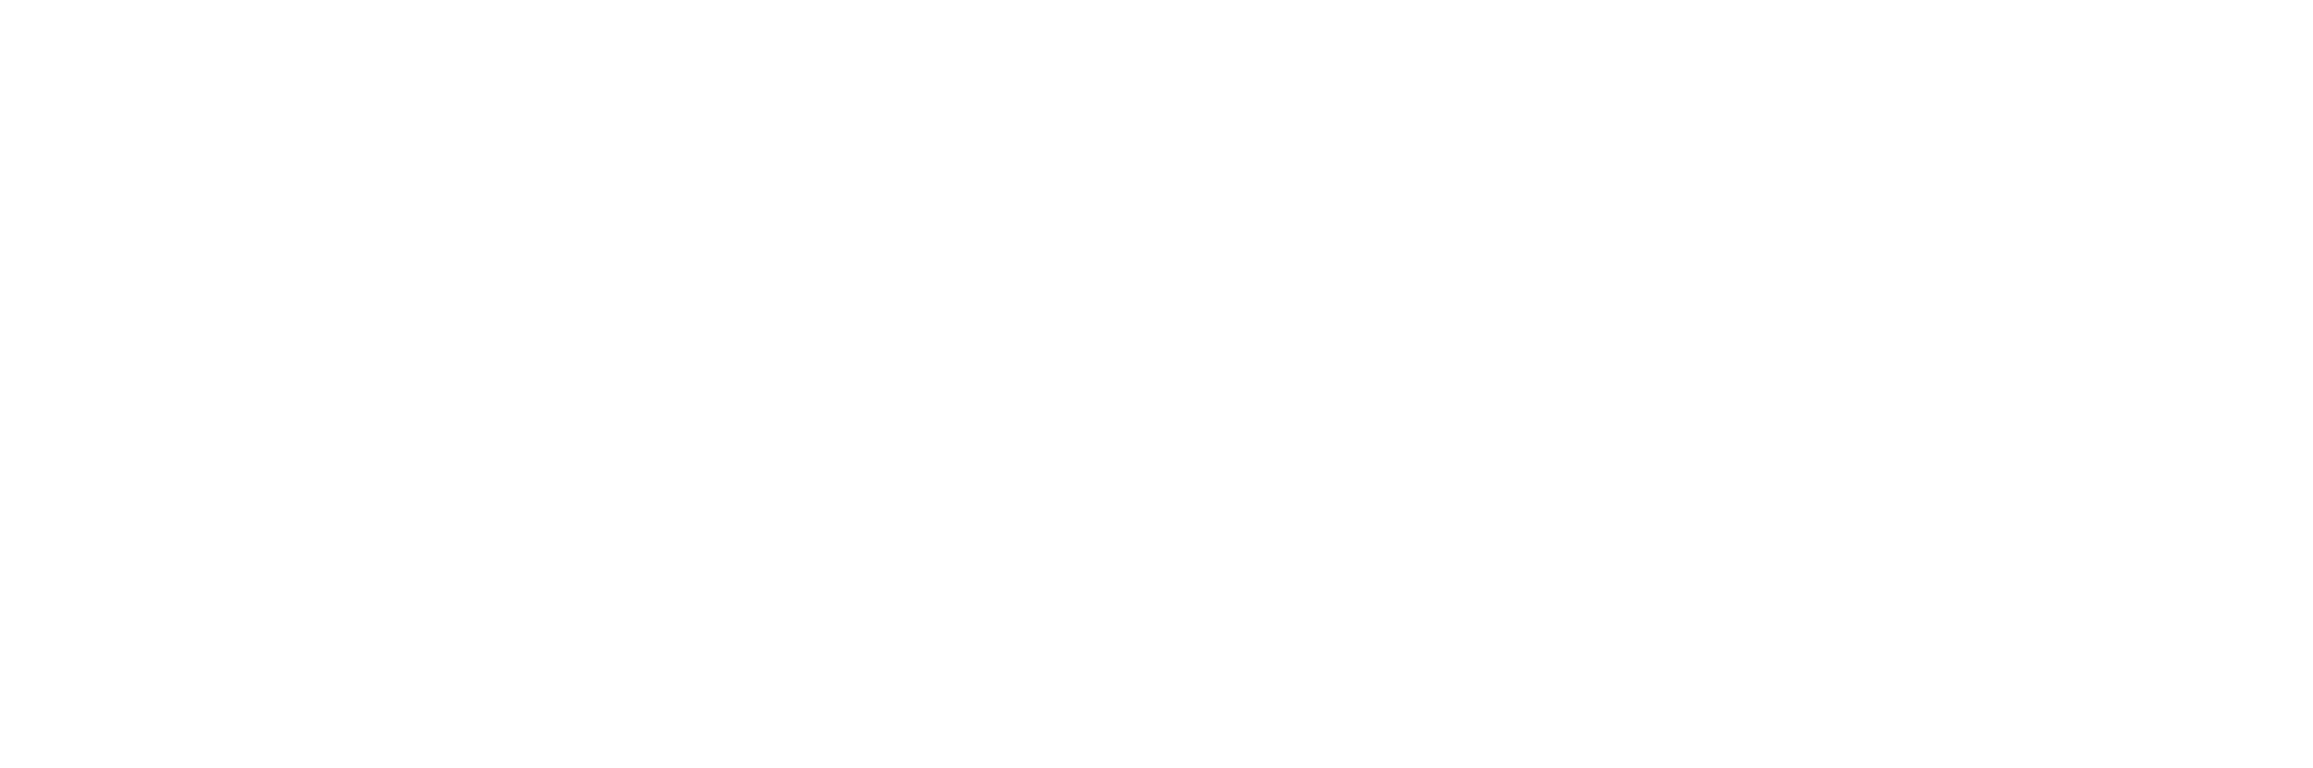 Syolo